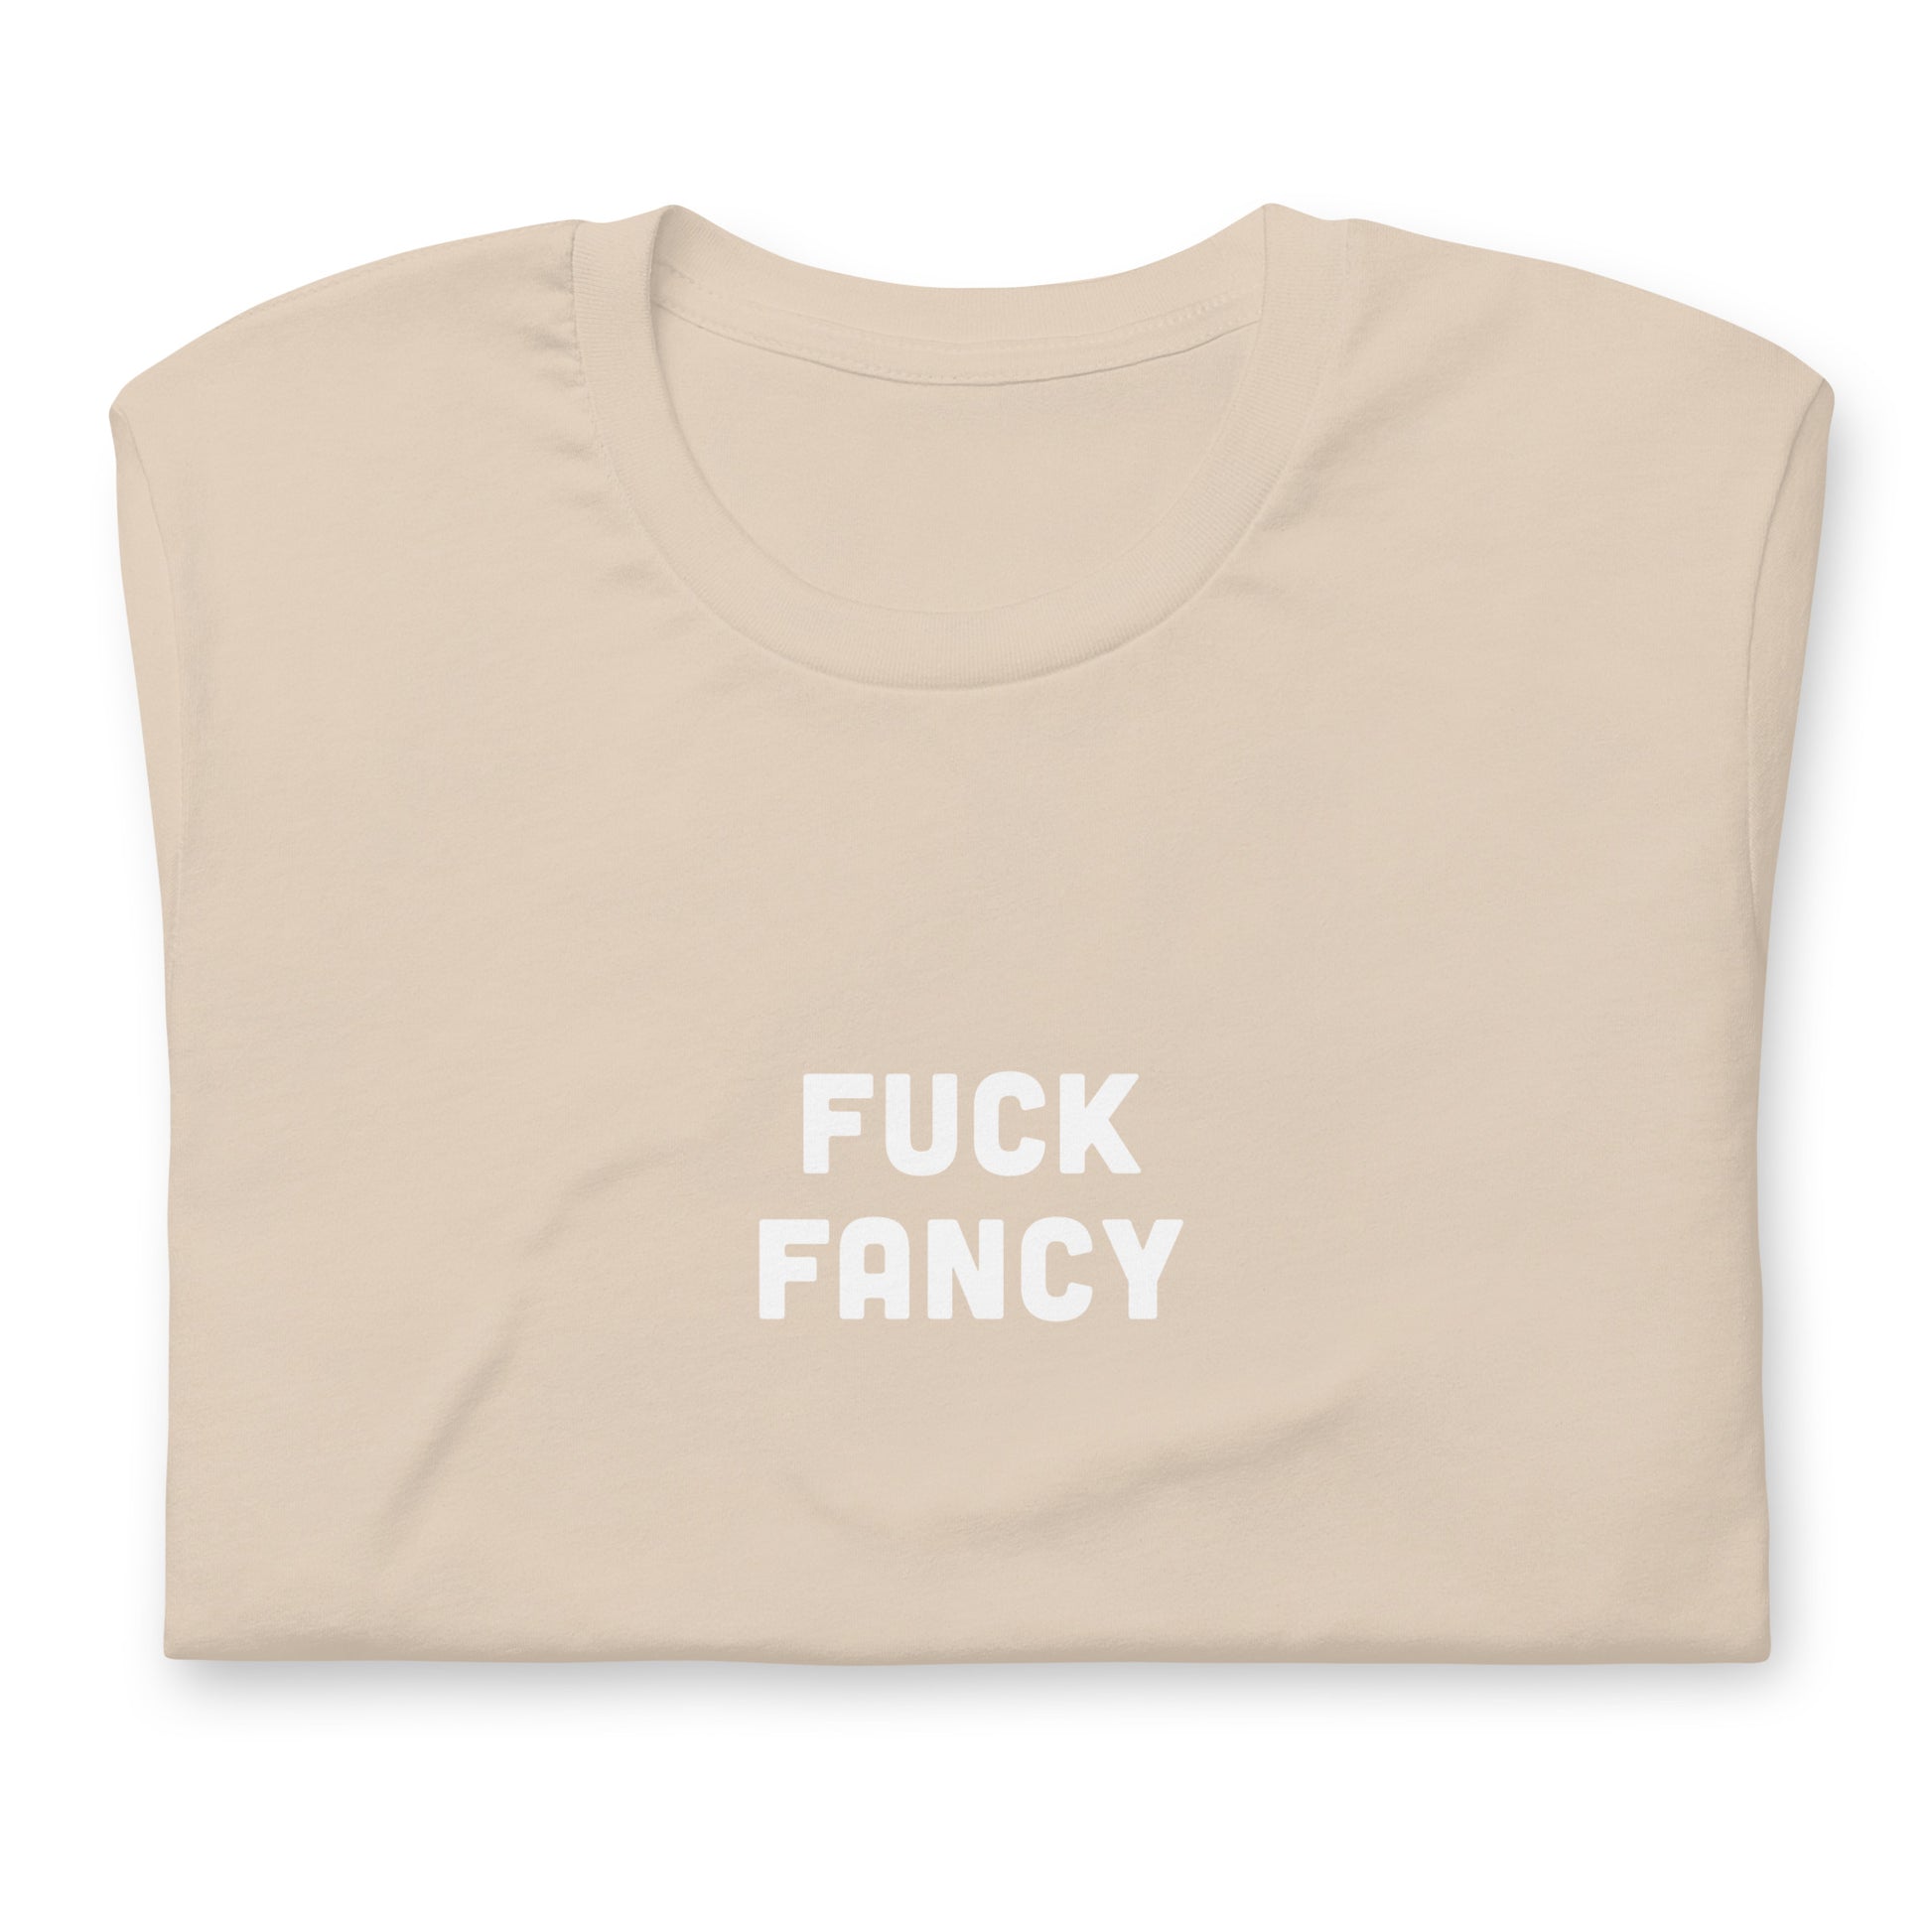 Fuck Fancy T-Shirt Size XL Color Asphalt